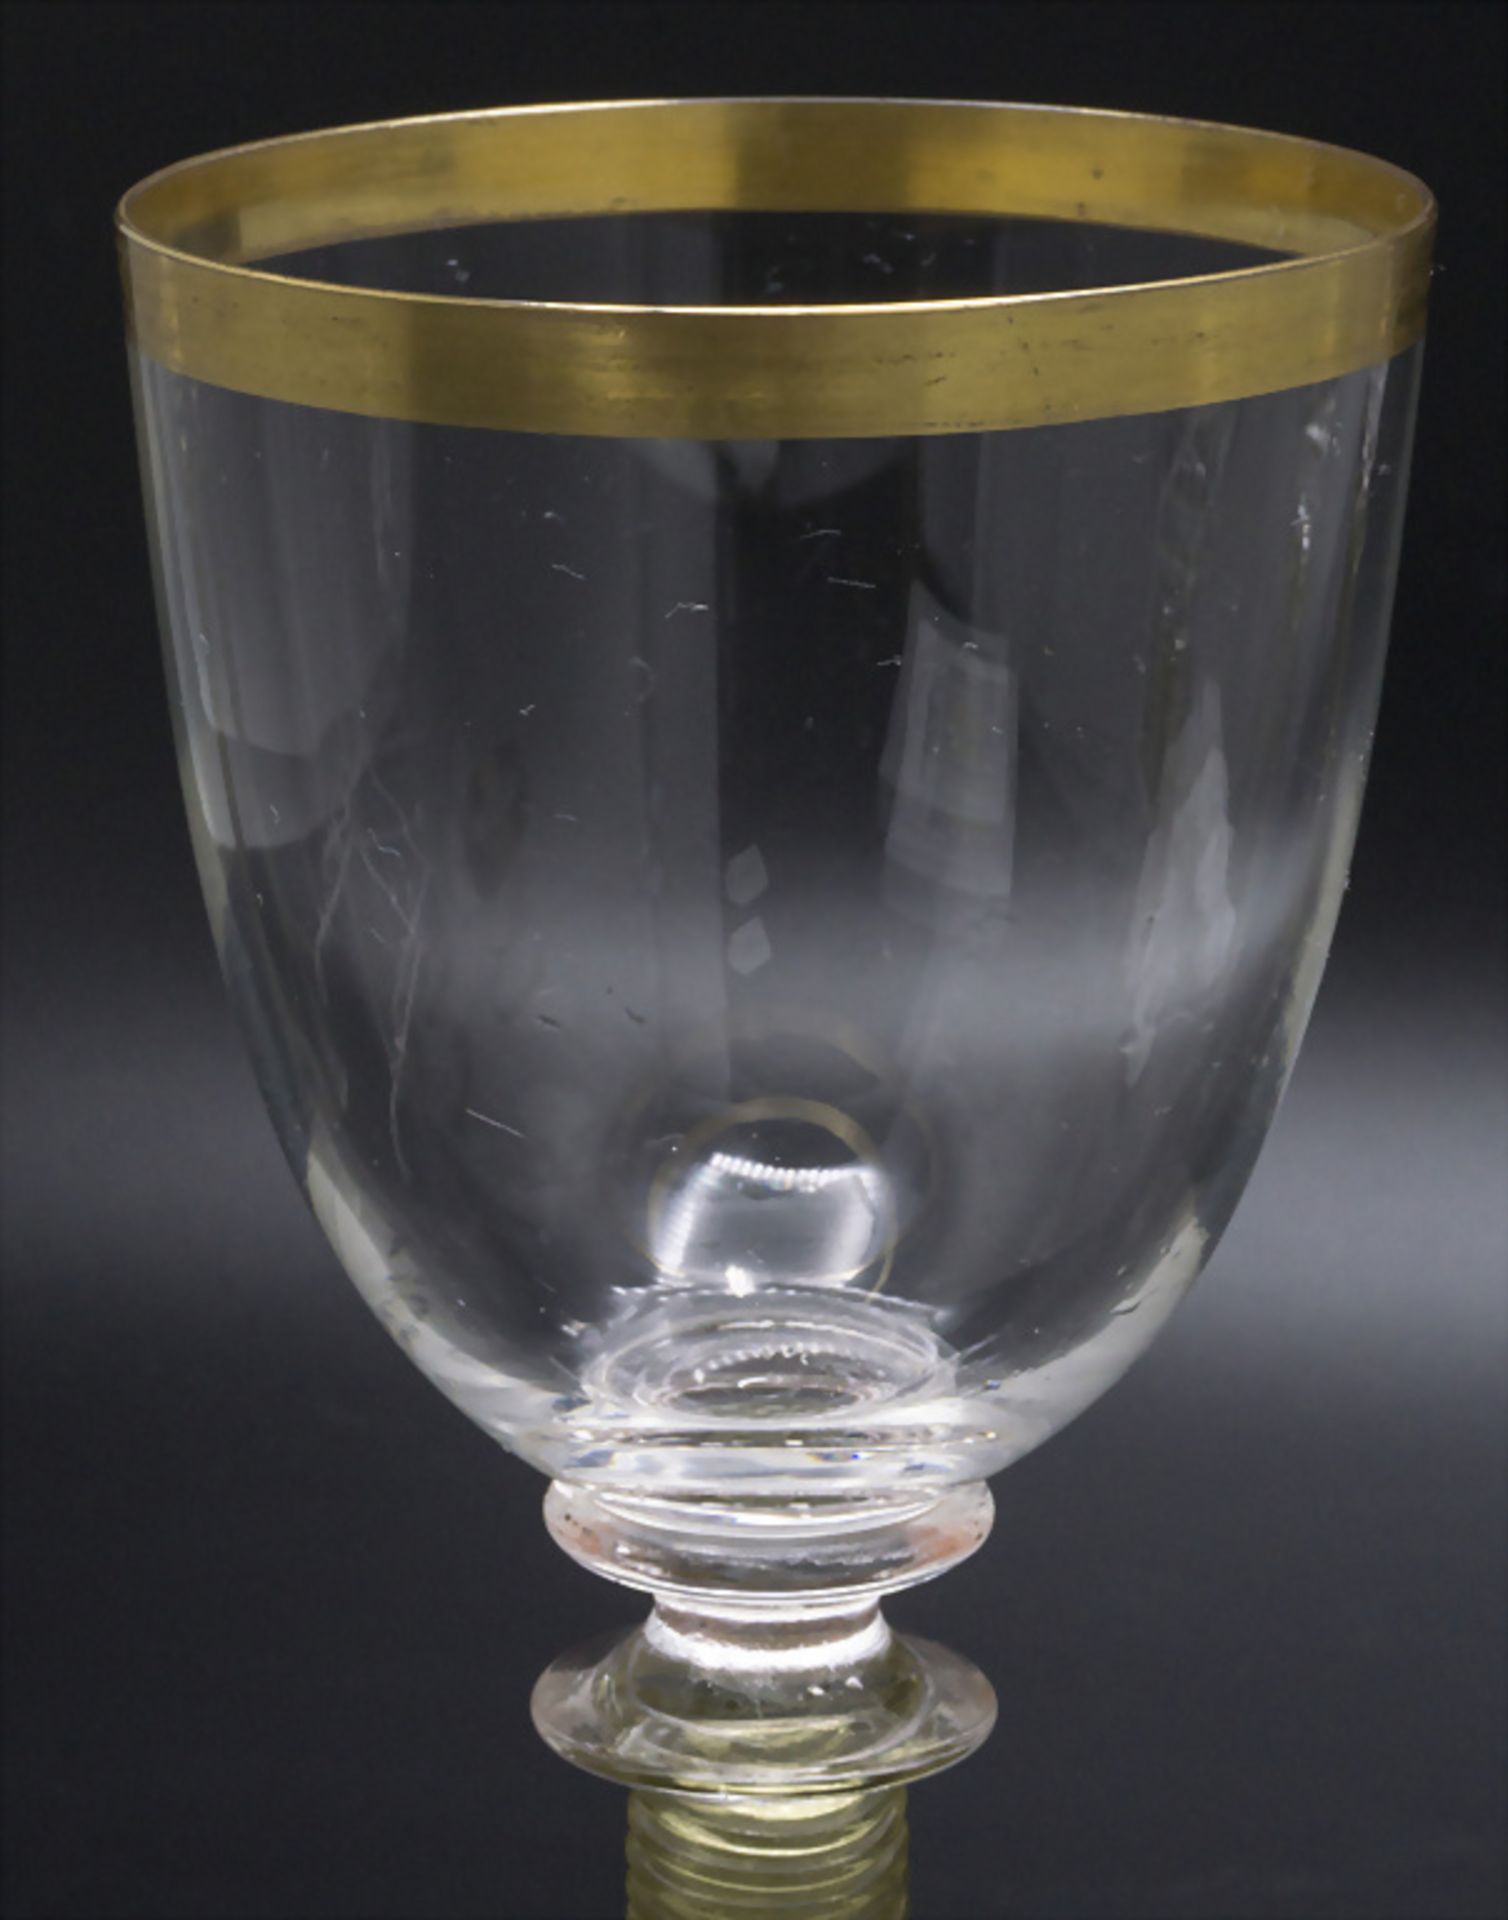 5 Jugendstil Weingläser / 5 Art Nouveau wine glasses, Theresienthal, um 1900 - Image 3 of 4